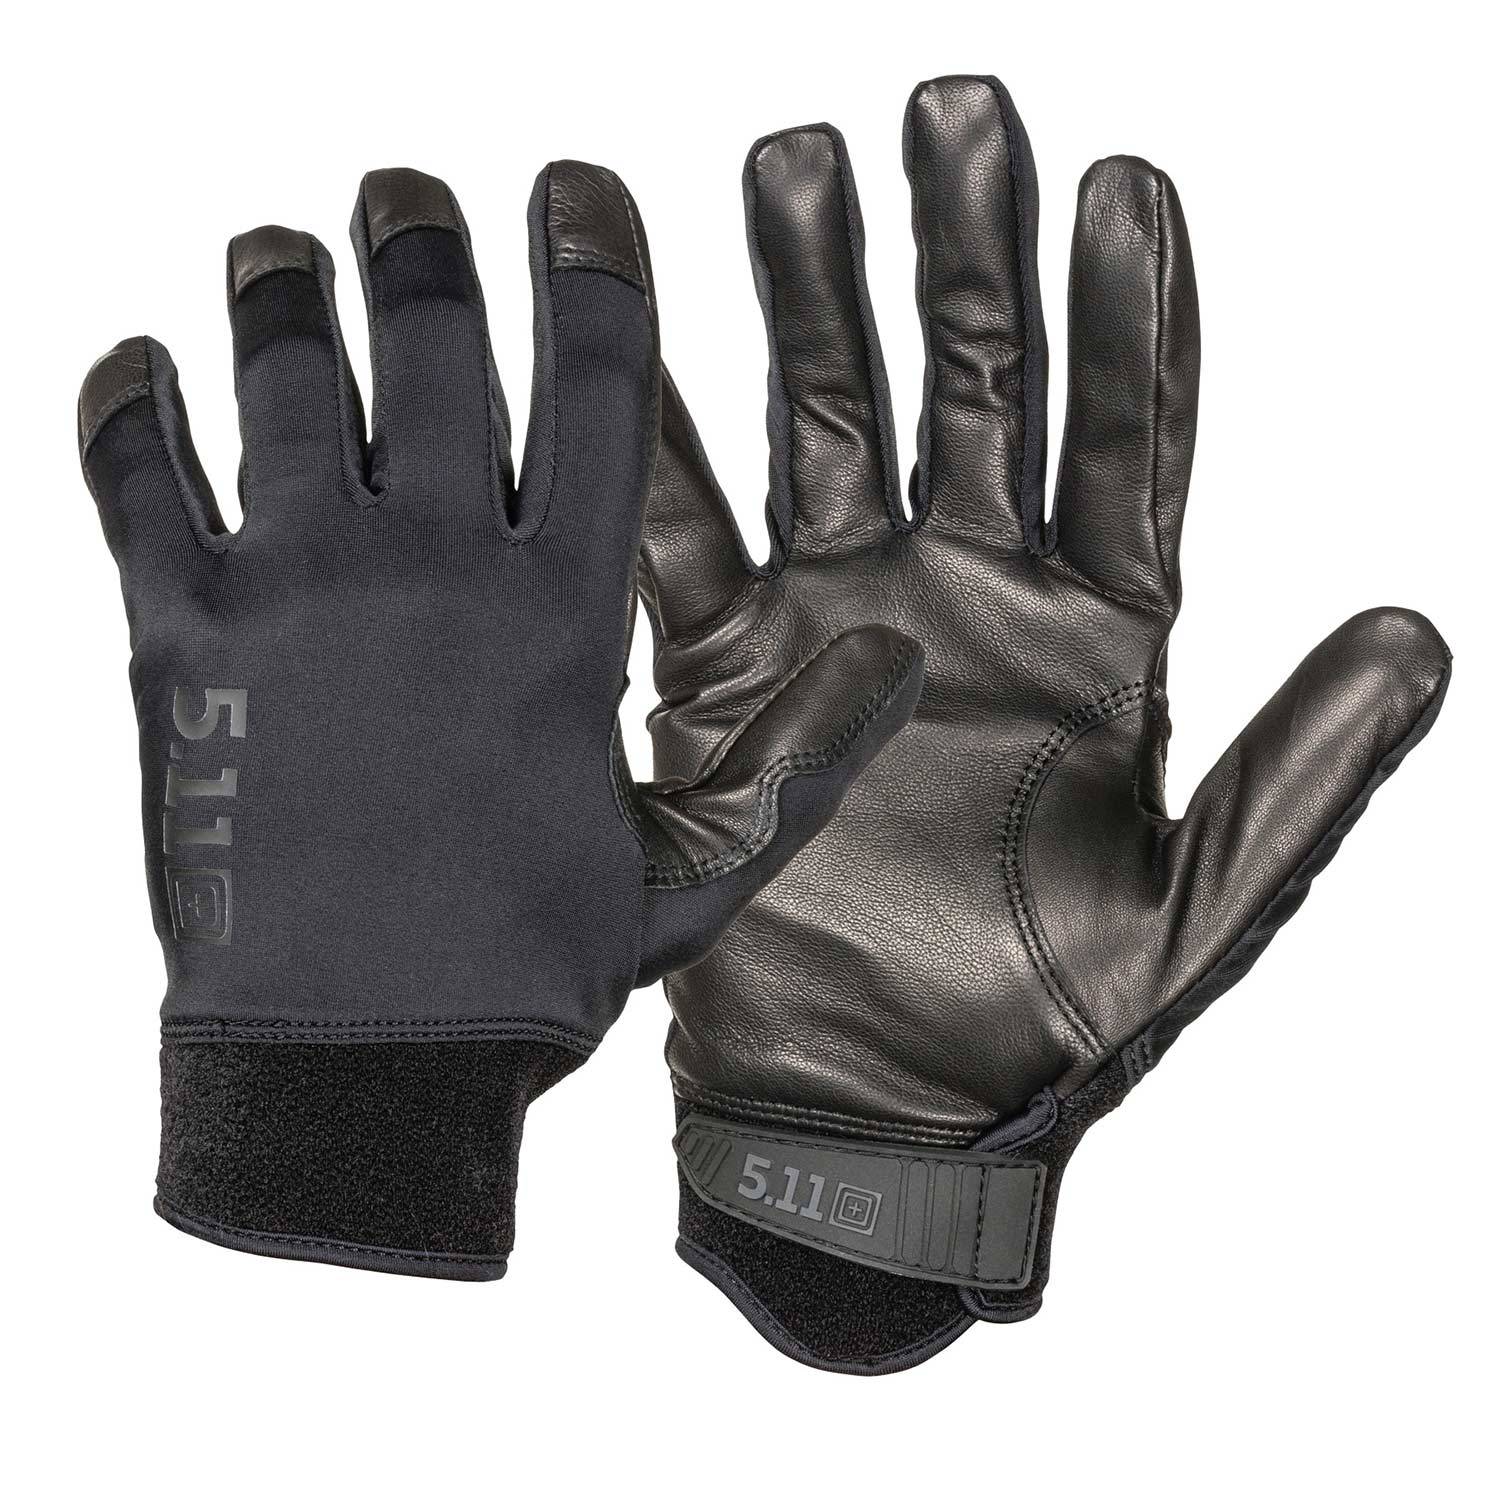 5.11 Taclite 3 Gloves	